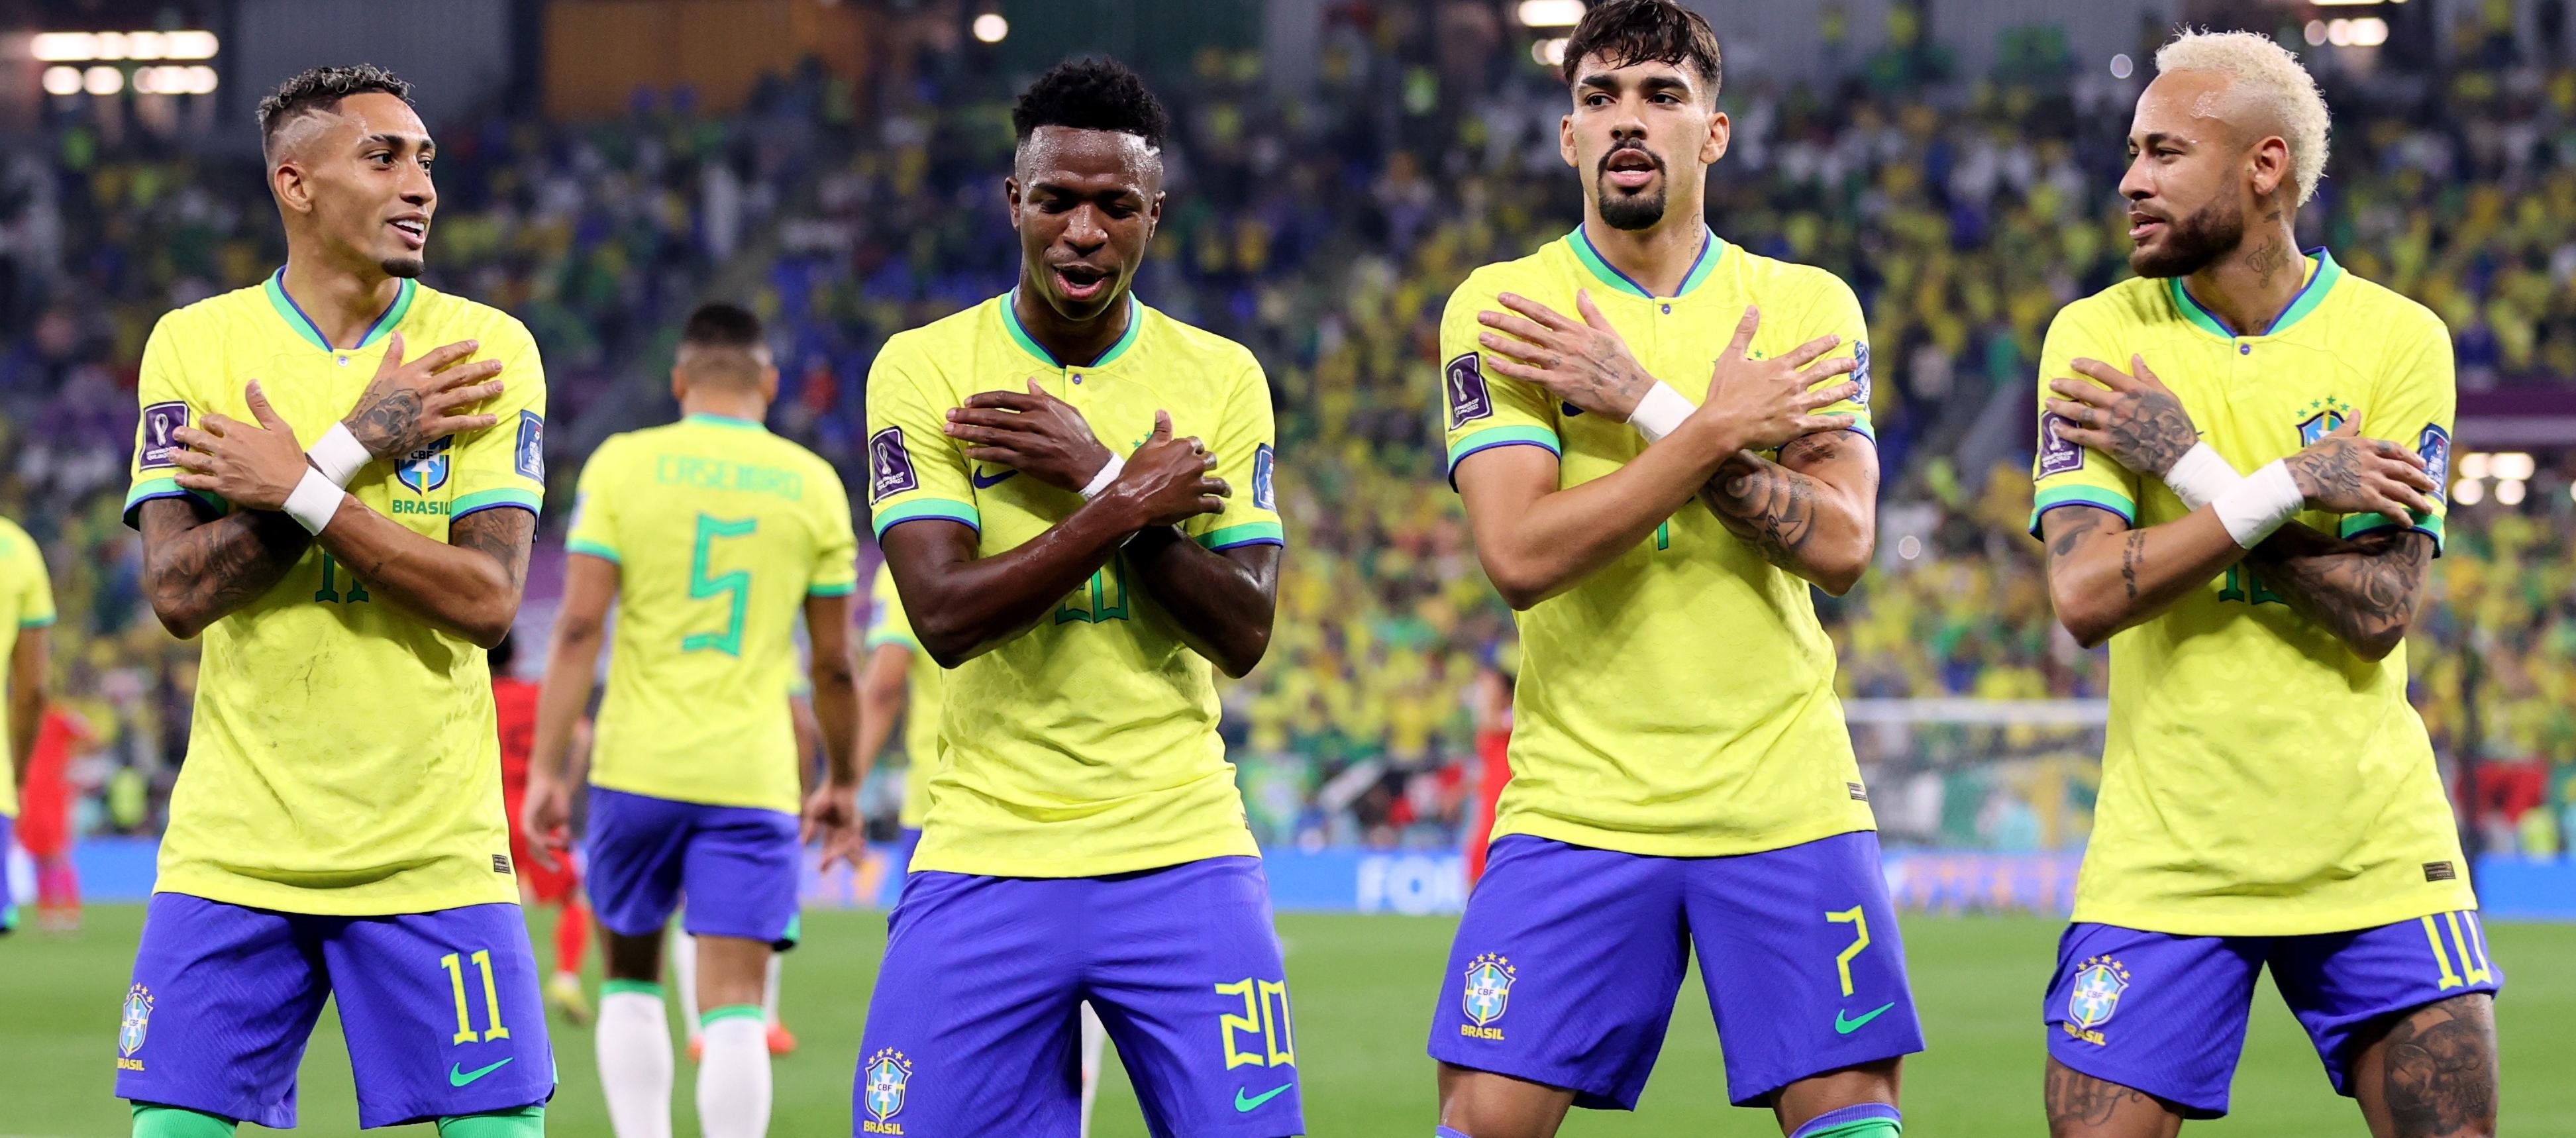 Raphinha, Vinicius, Lucas Paquetá y Neymar, integrantes de la selección brasileña en Catar 2022.